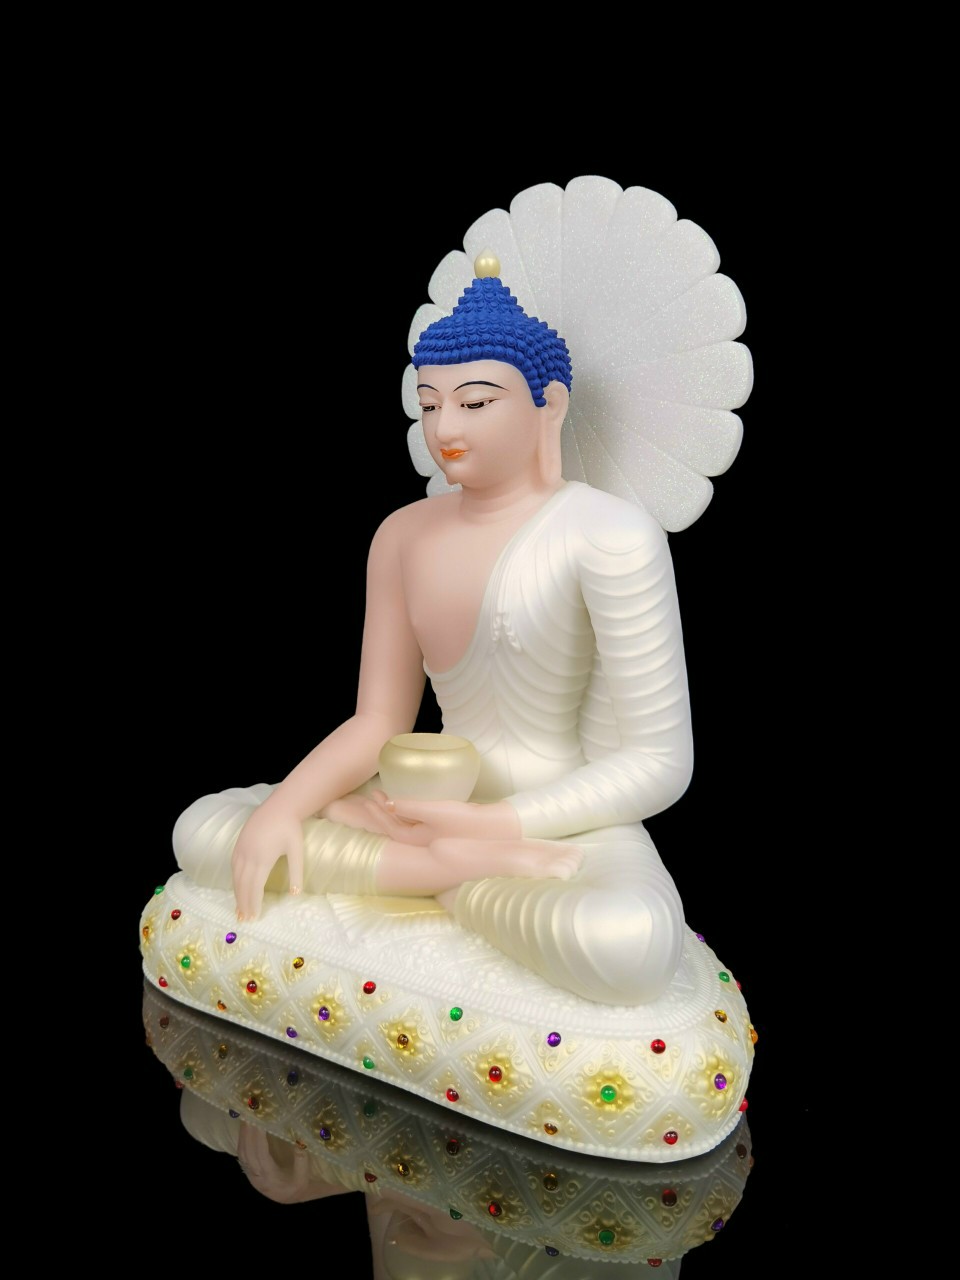 Phật A Di Đà Đá 8204 ,12",16",19"